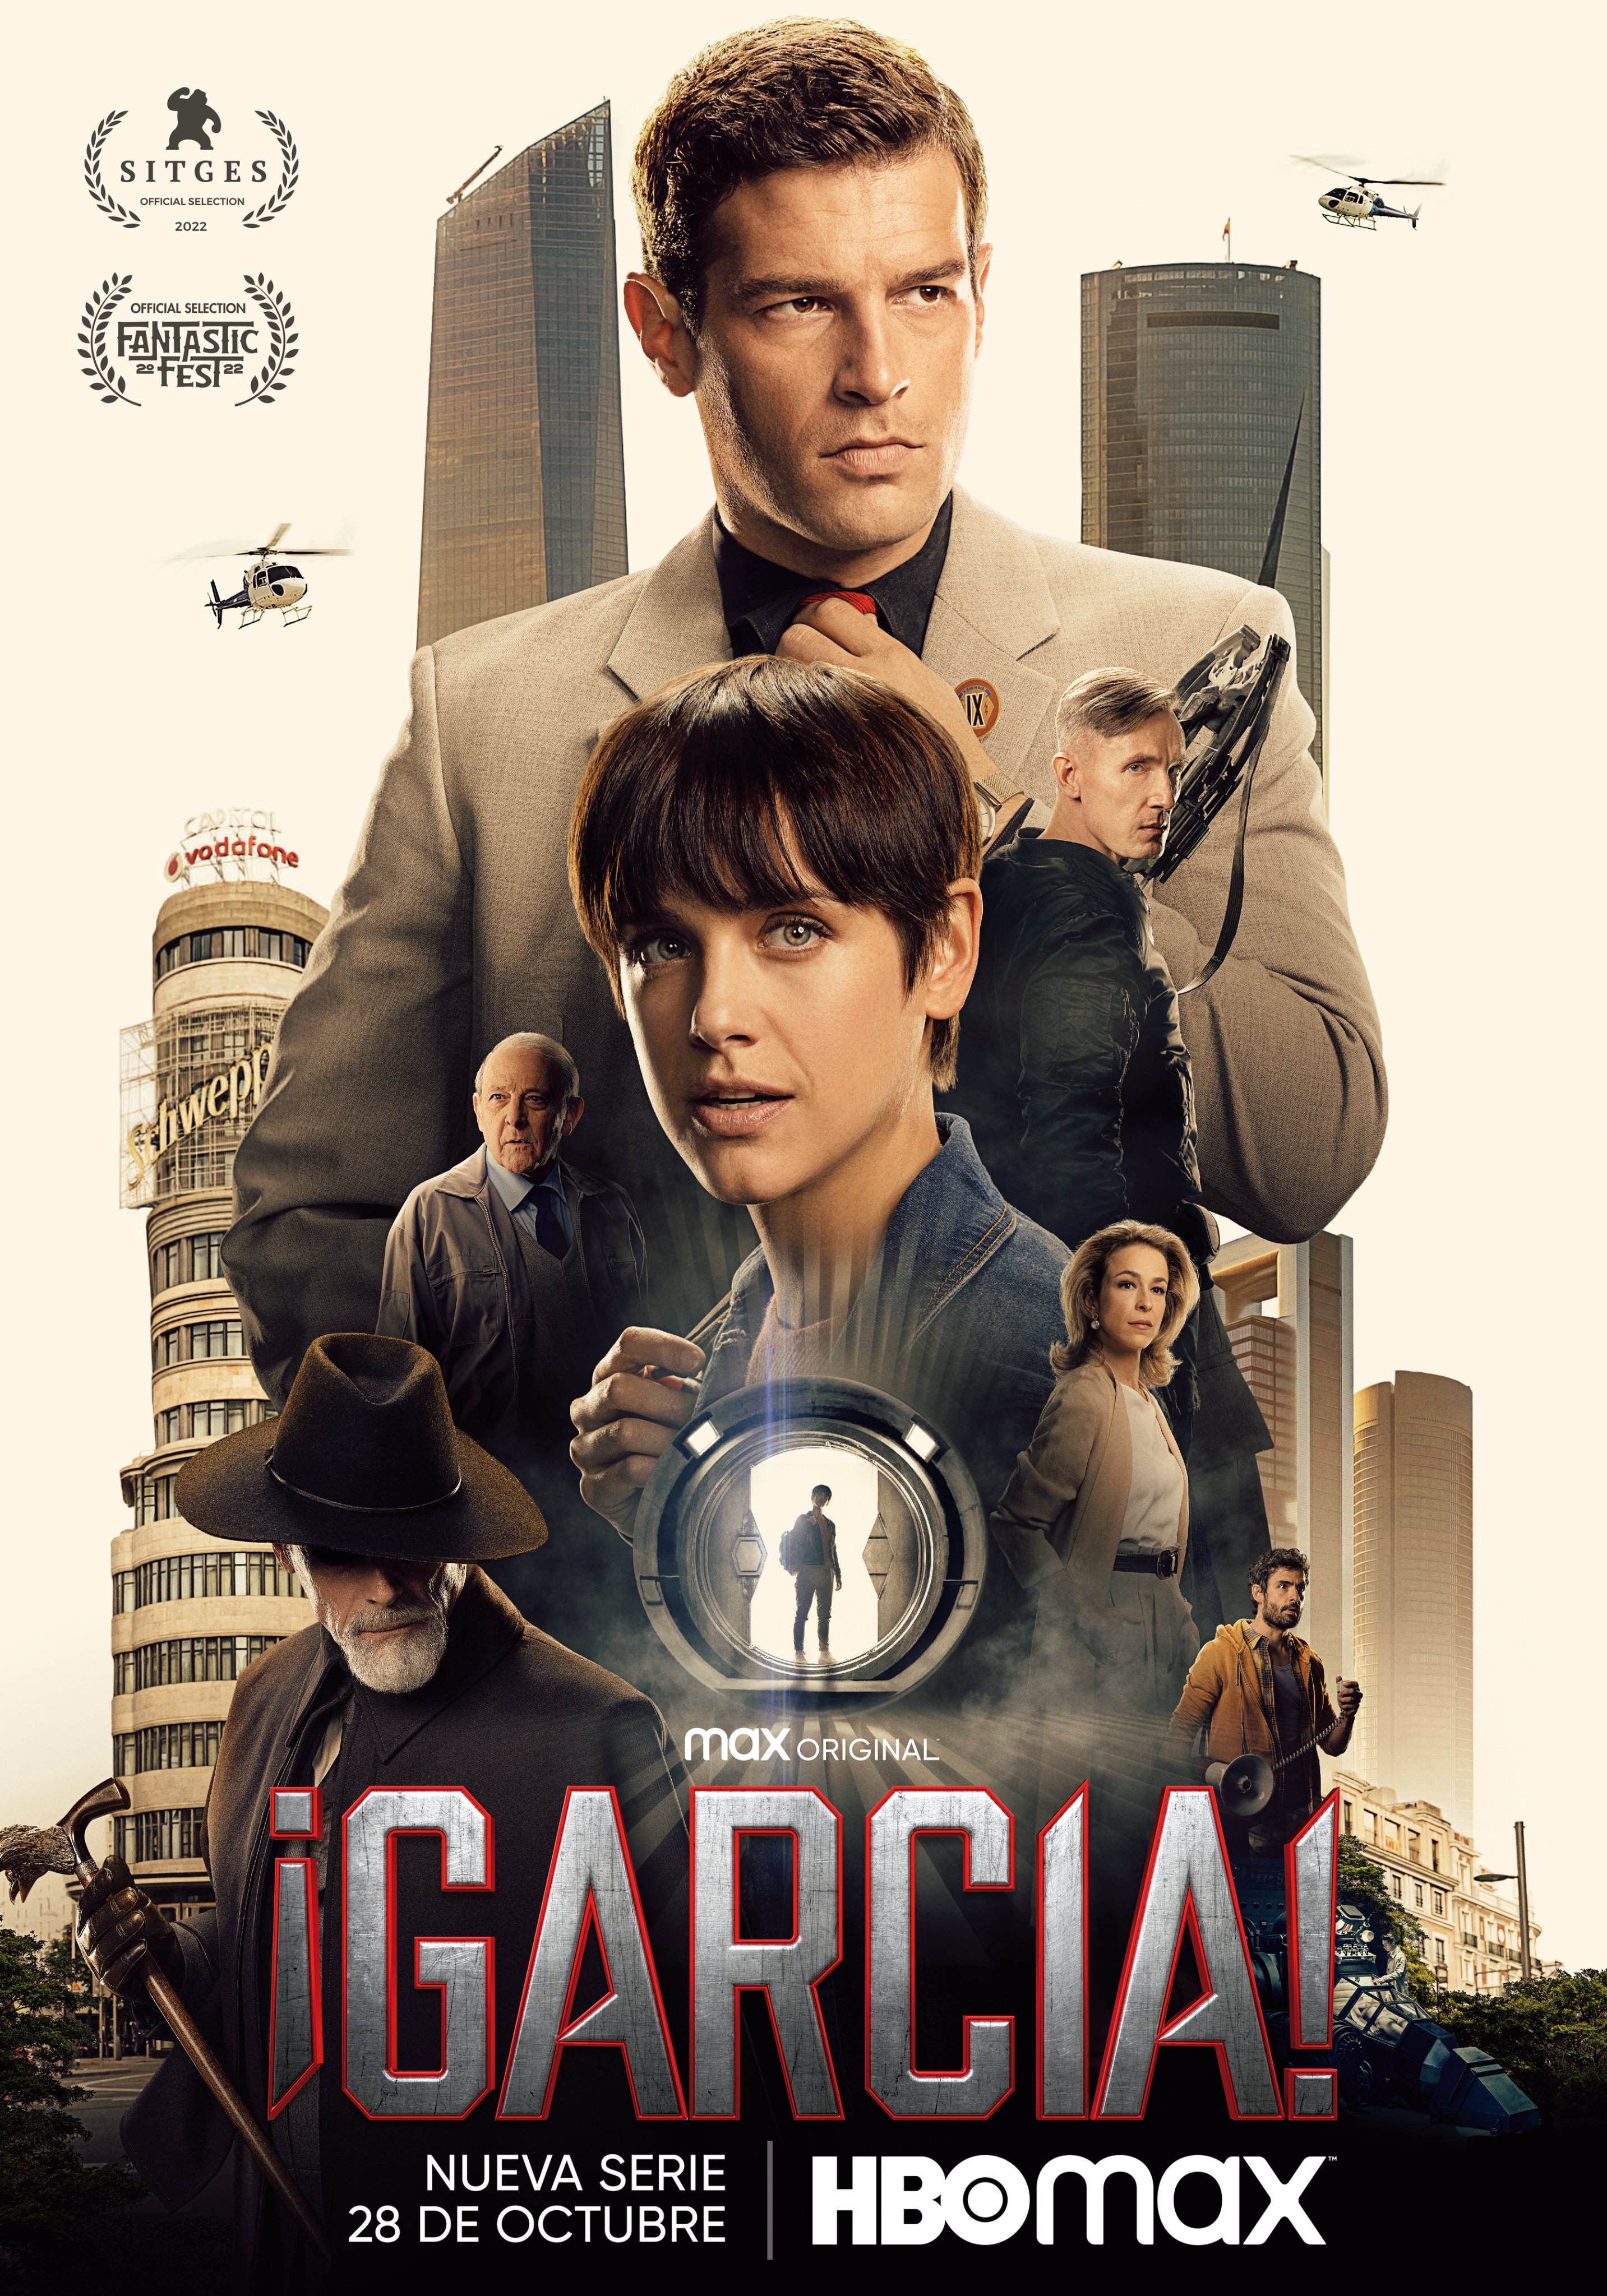 García! Season 1 Episode 4